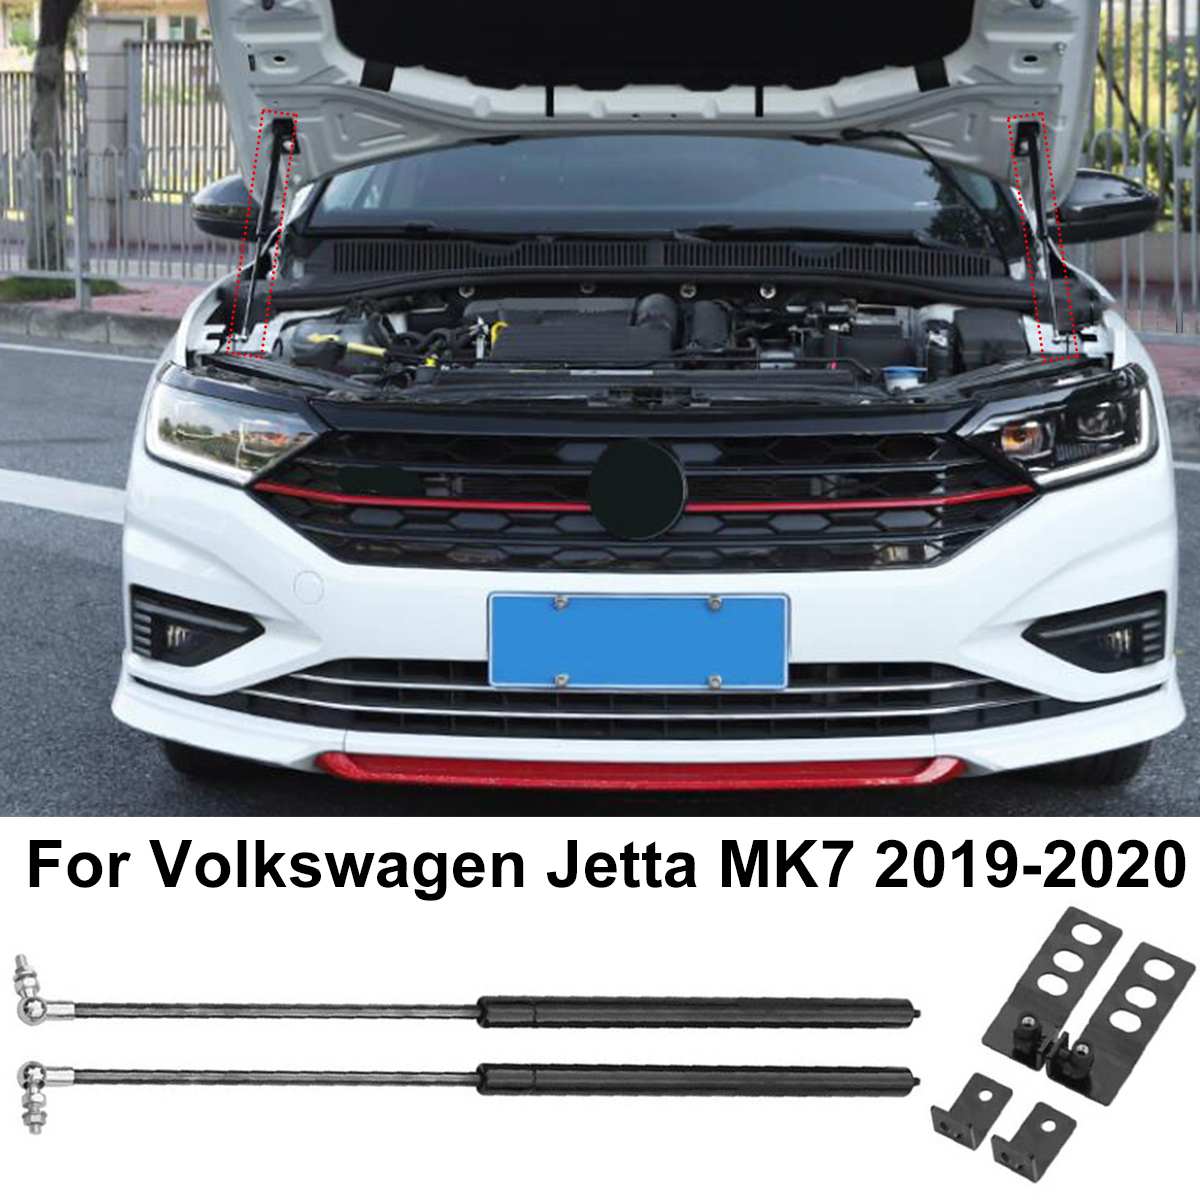 2 Stuks Voor Motorkap Refit Bonnet Hood Gasveer Shock Lift Strut Bars Voor Volkswagen Voor Jettta MK7